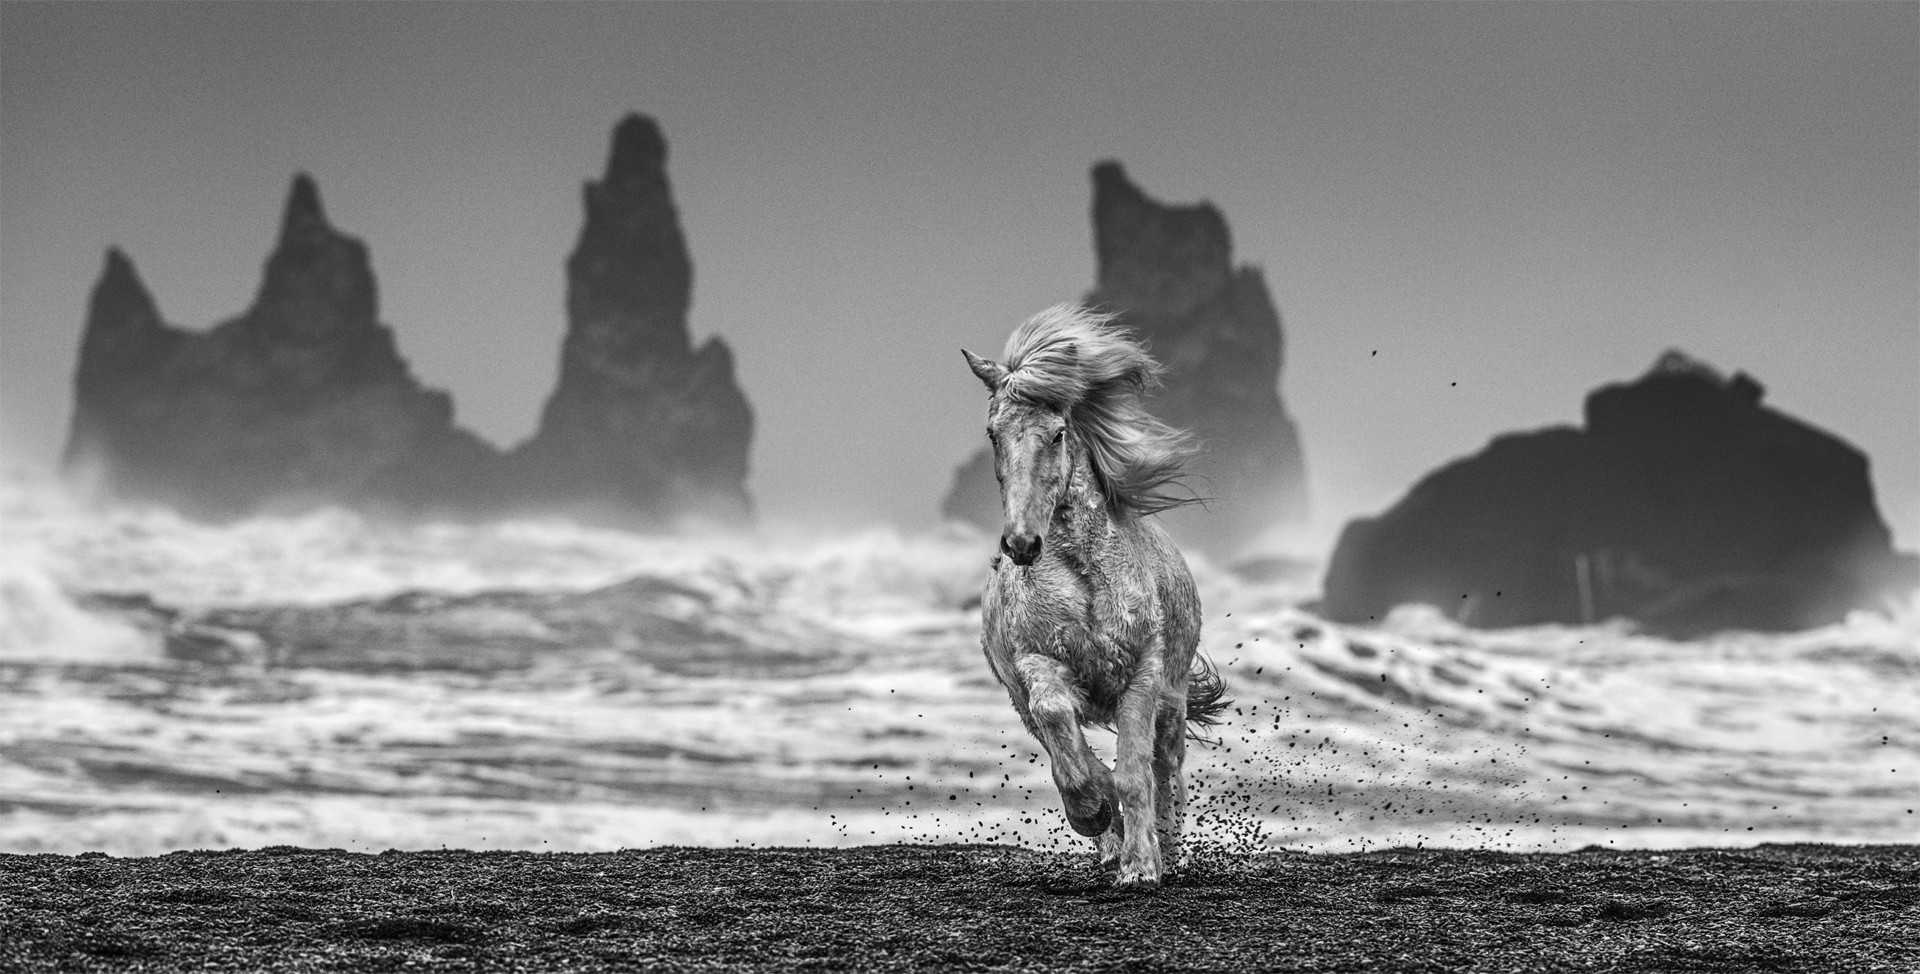 White Horses by David Yarrow